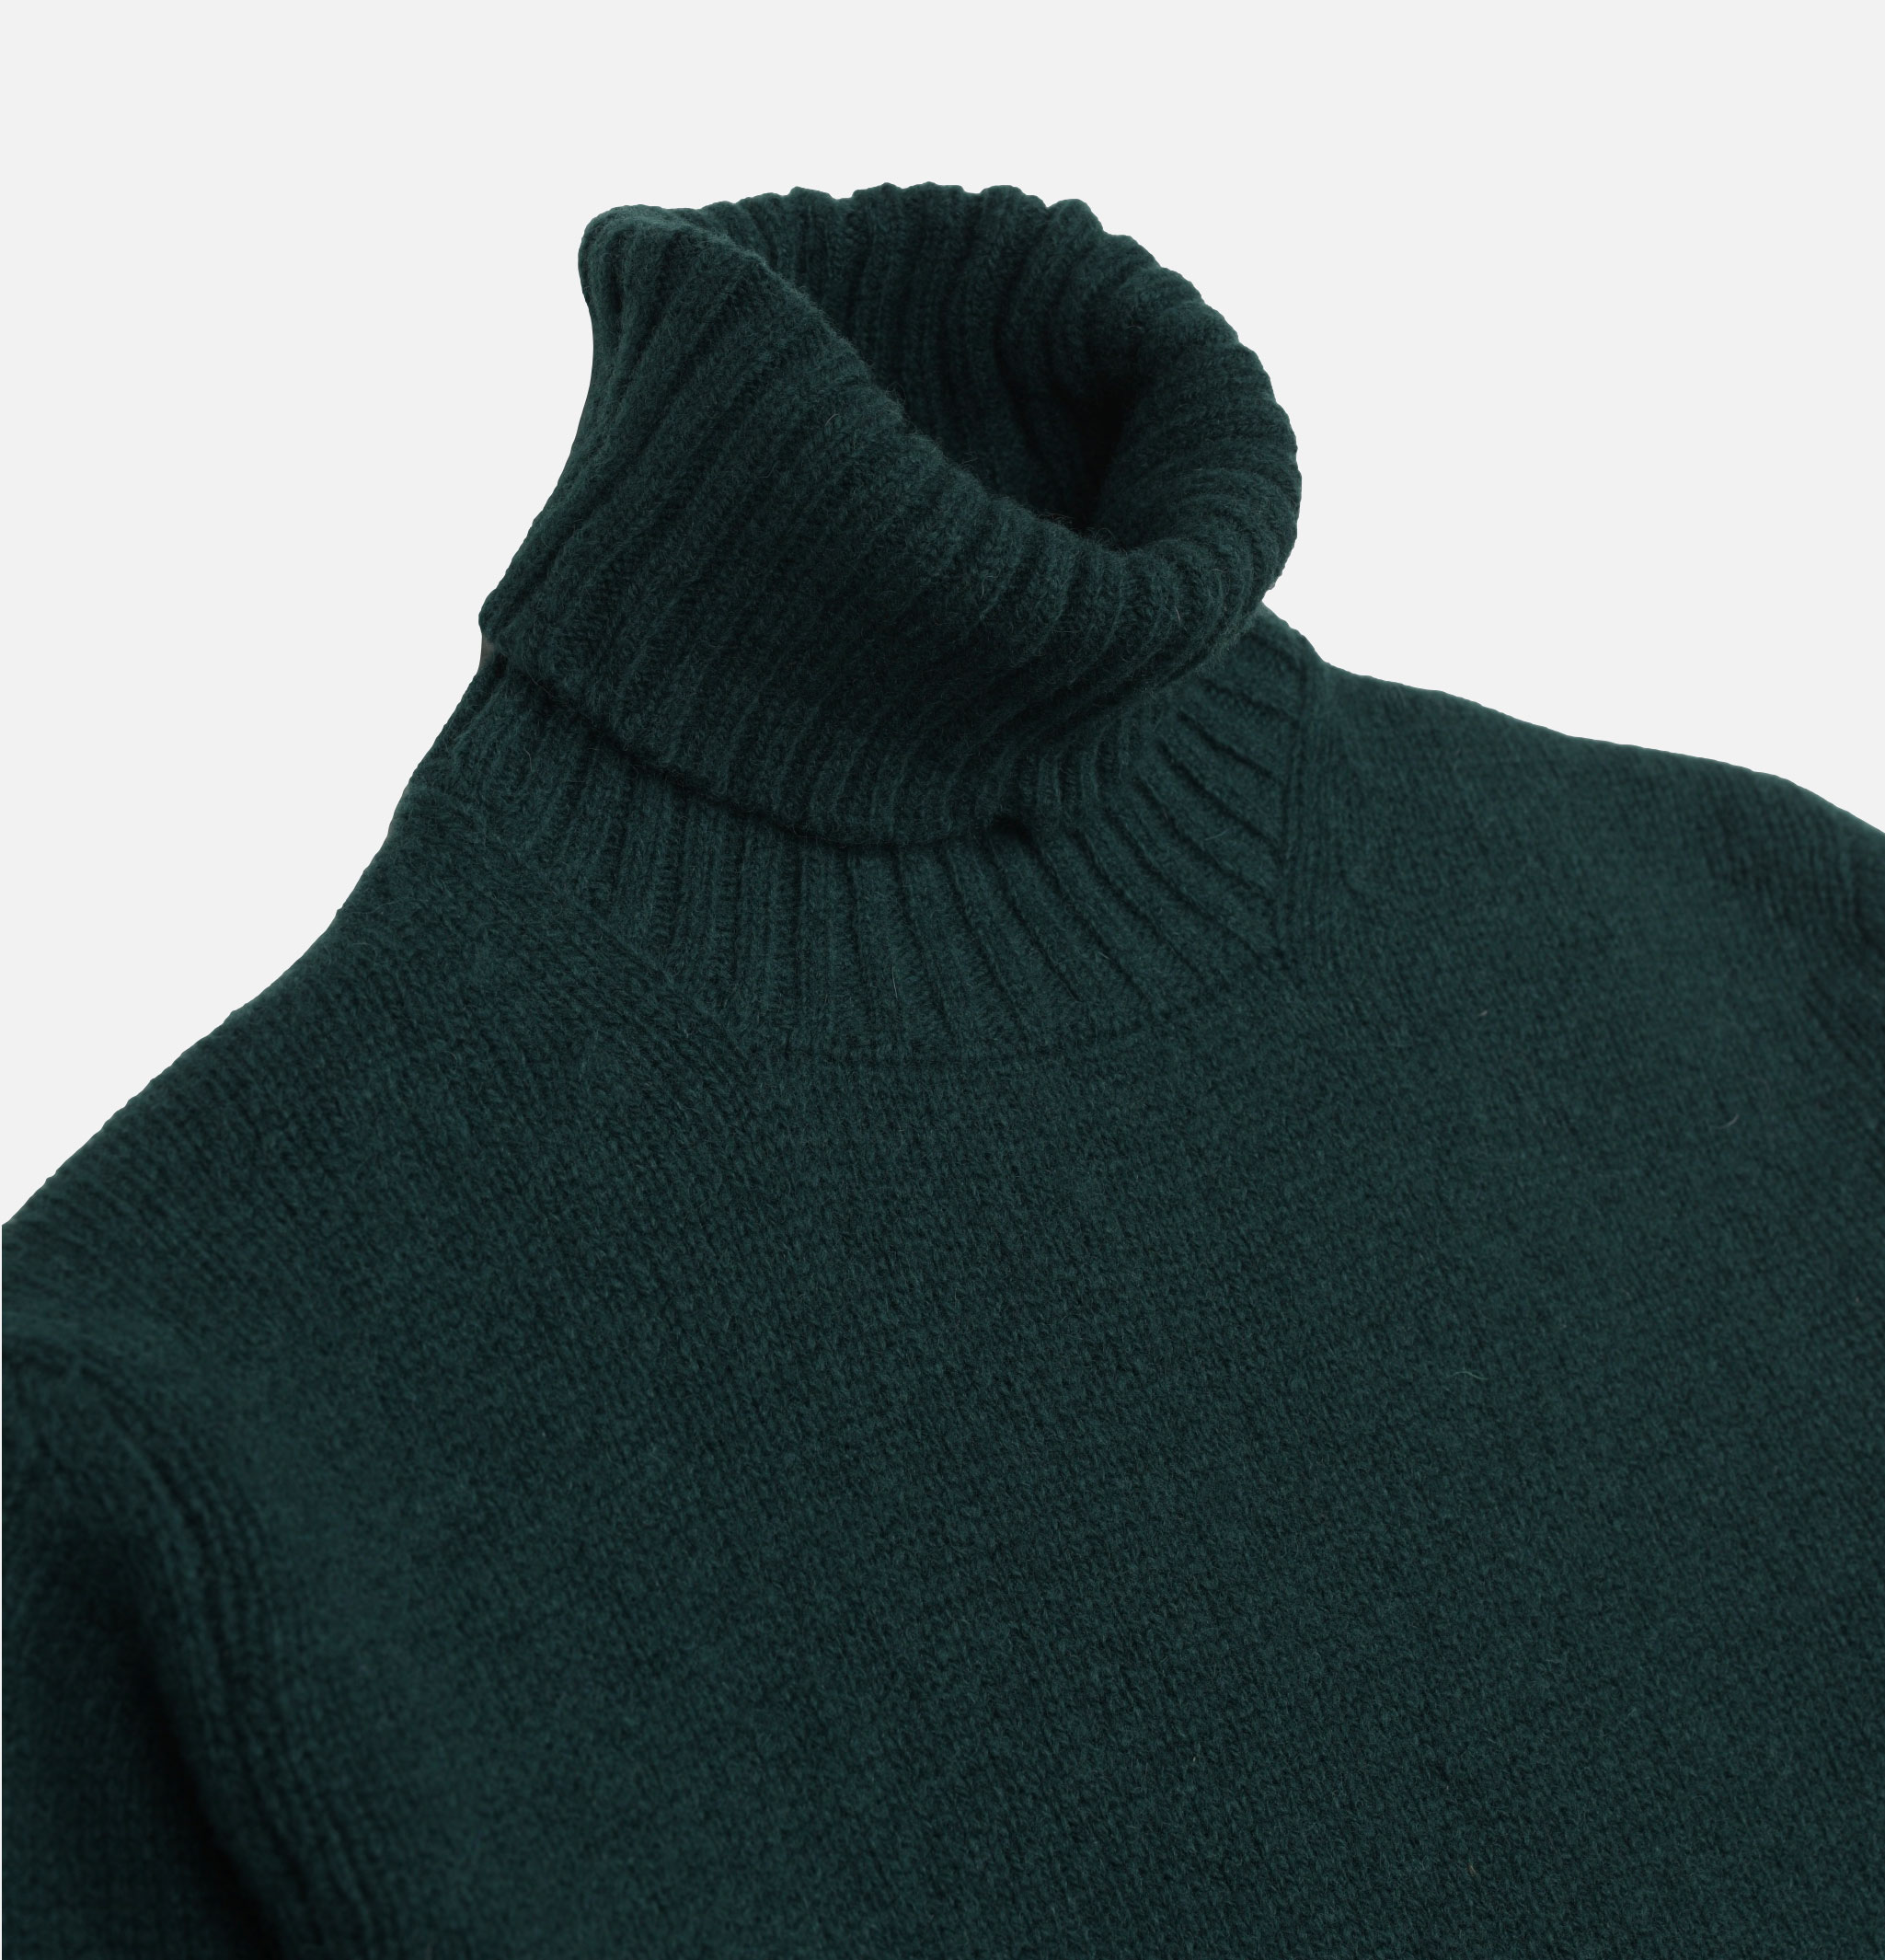 William Lockie Aryan Forest Green roll-neck sweater.